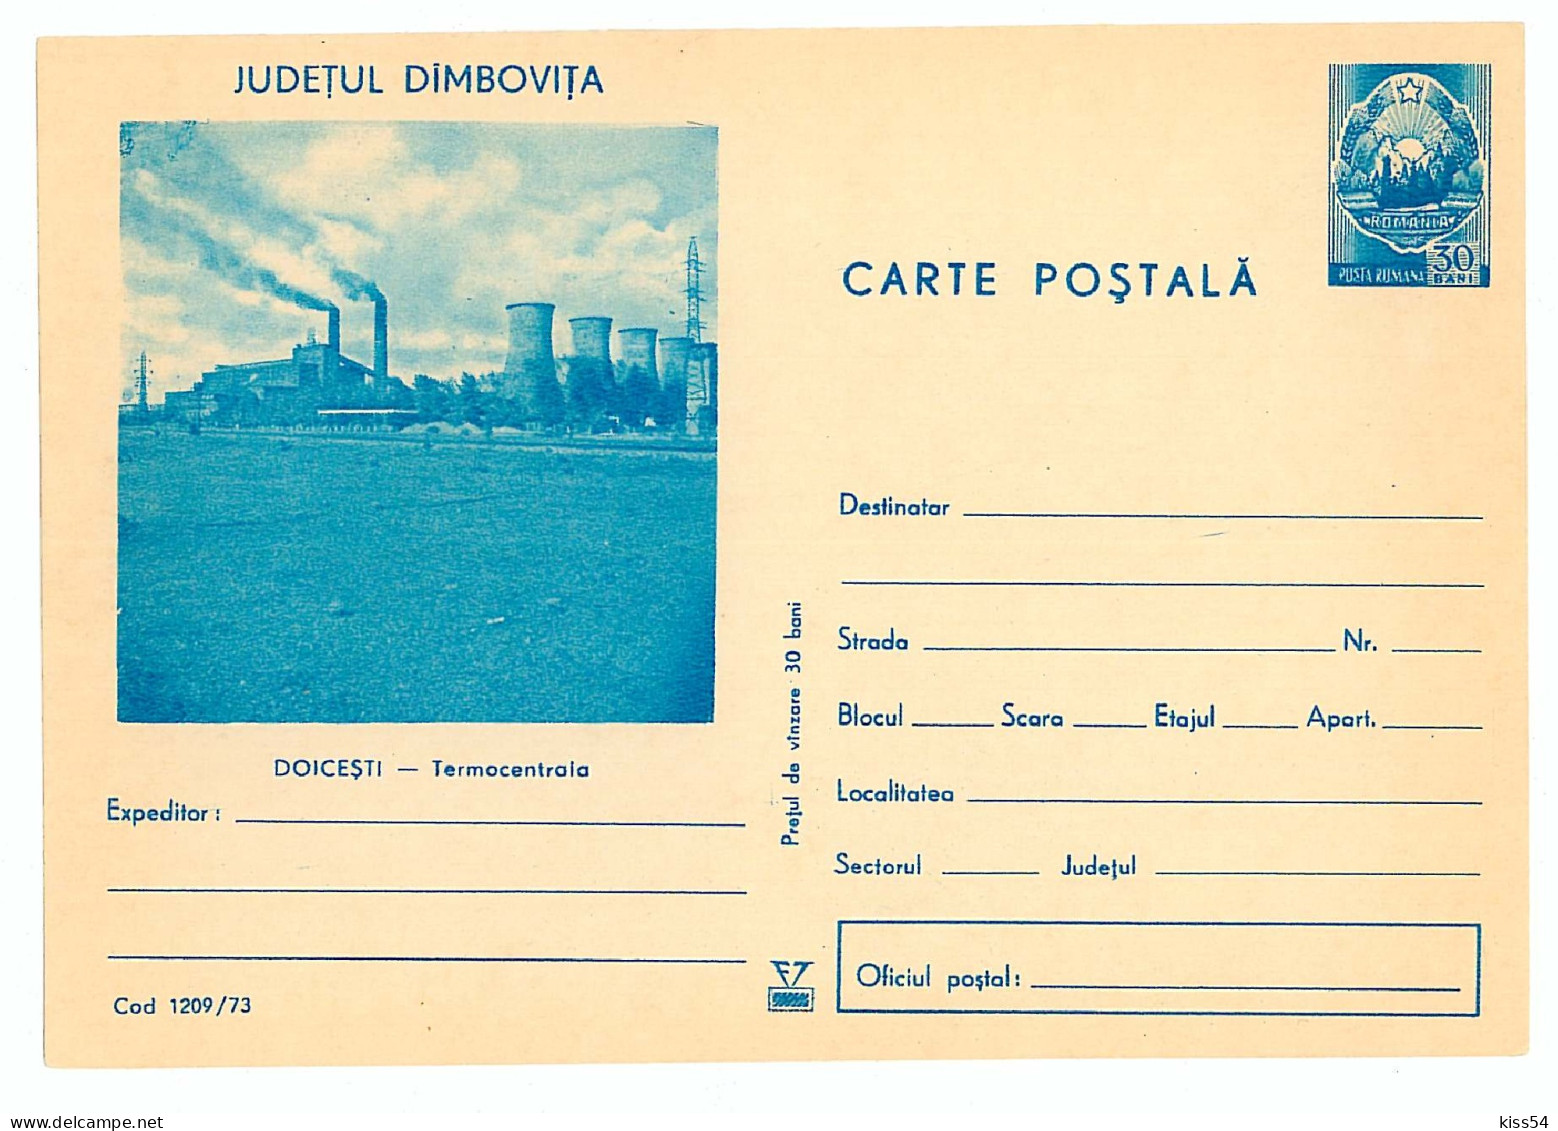 IP 73 - 1209 DOICESTI, Dambovita, Romania - Stationery - Unused - 1973 - Entiers Postaux